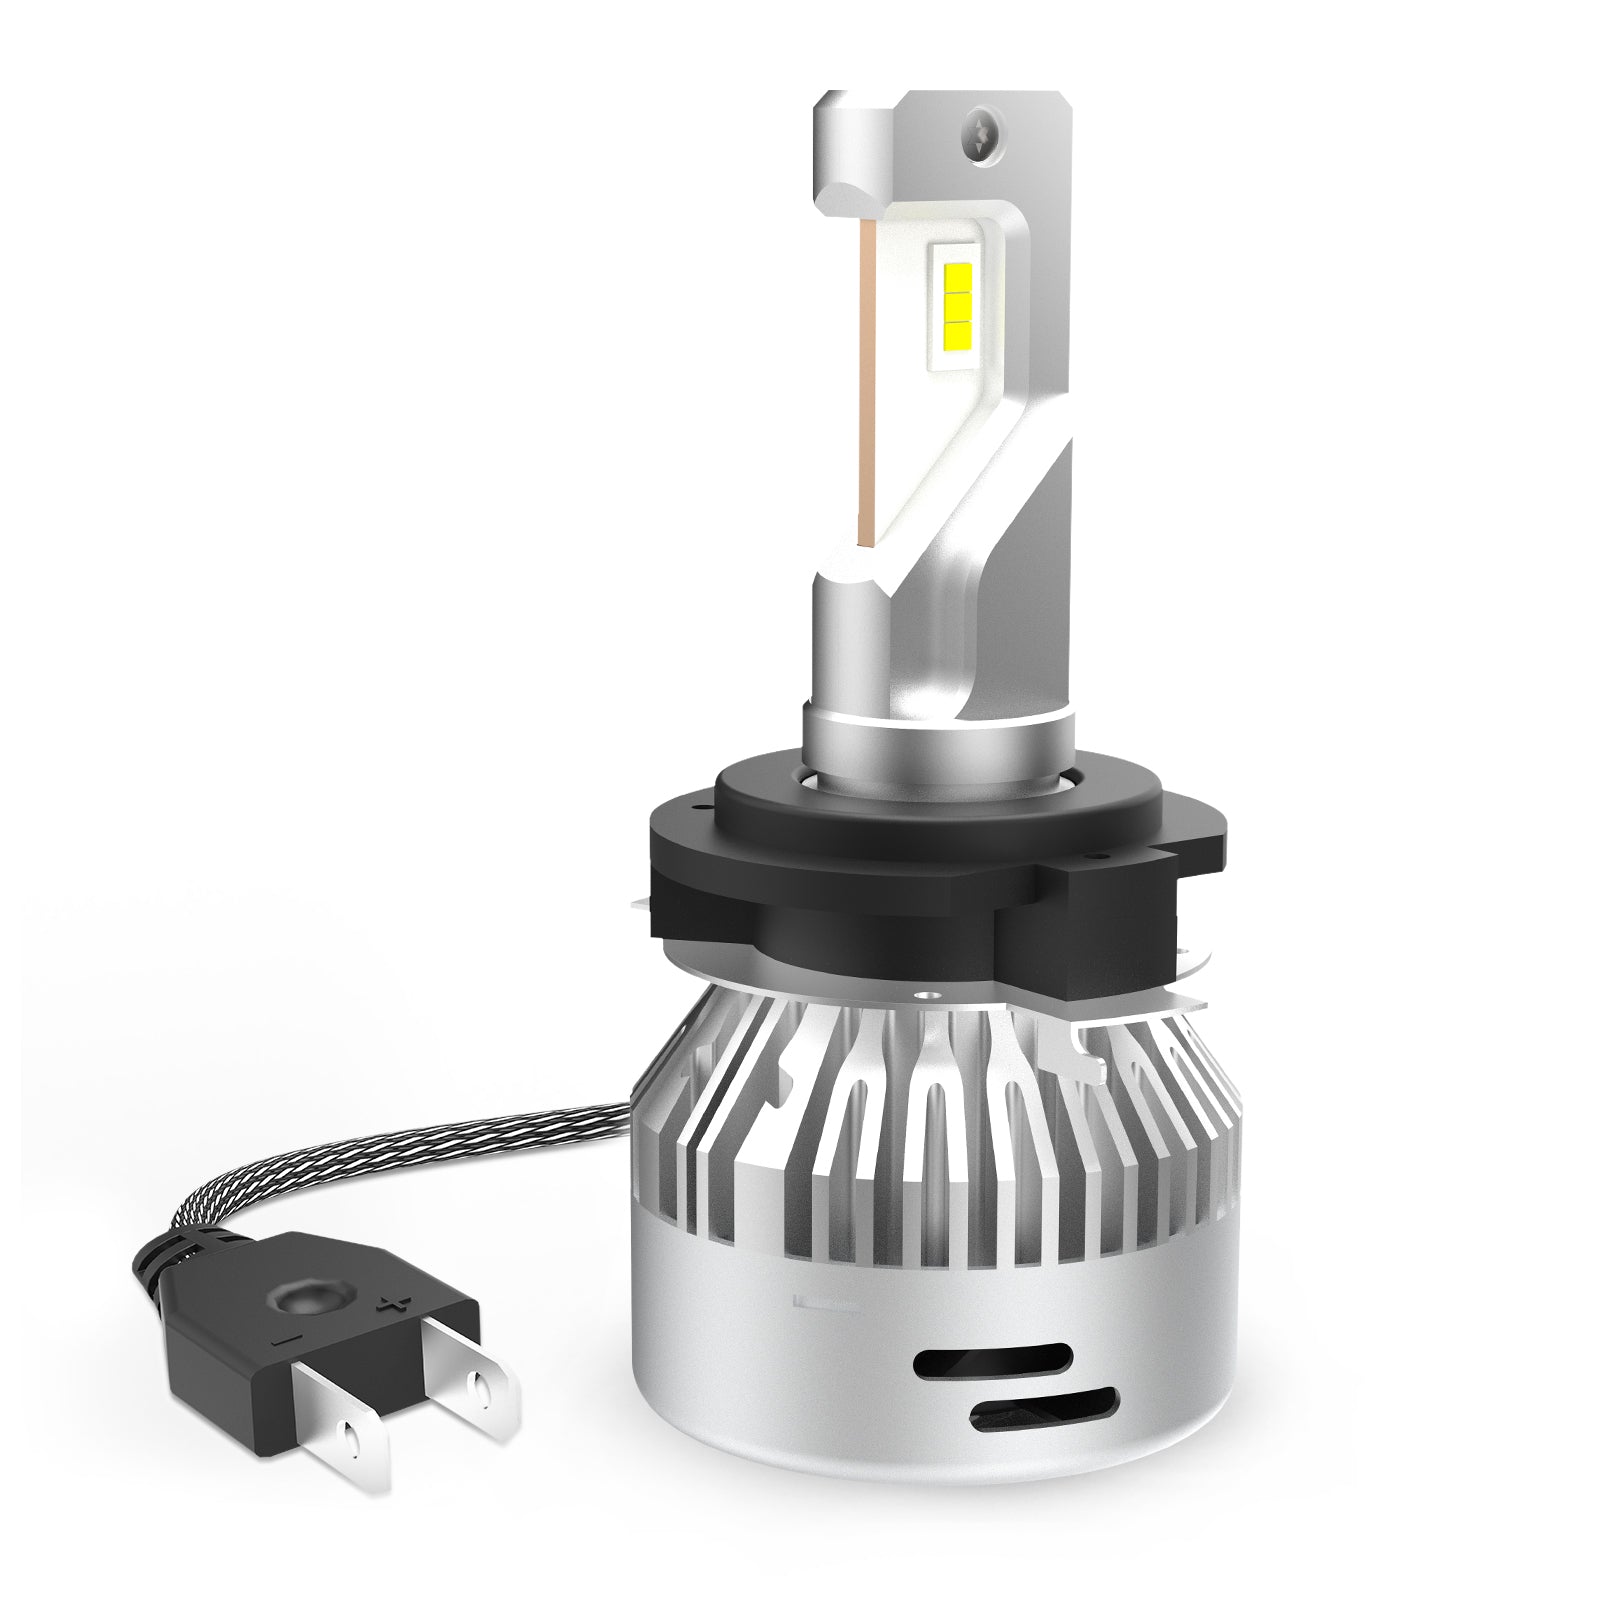 LASFIT D2 D2S D2R Light Bulbs, Custom Plug and Play, for GTR G35